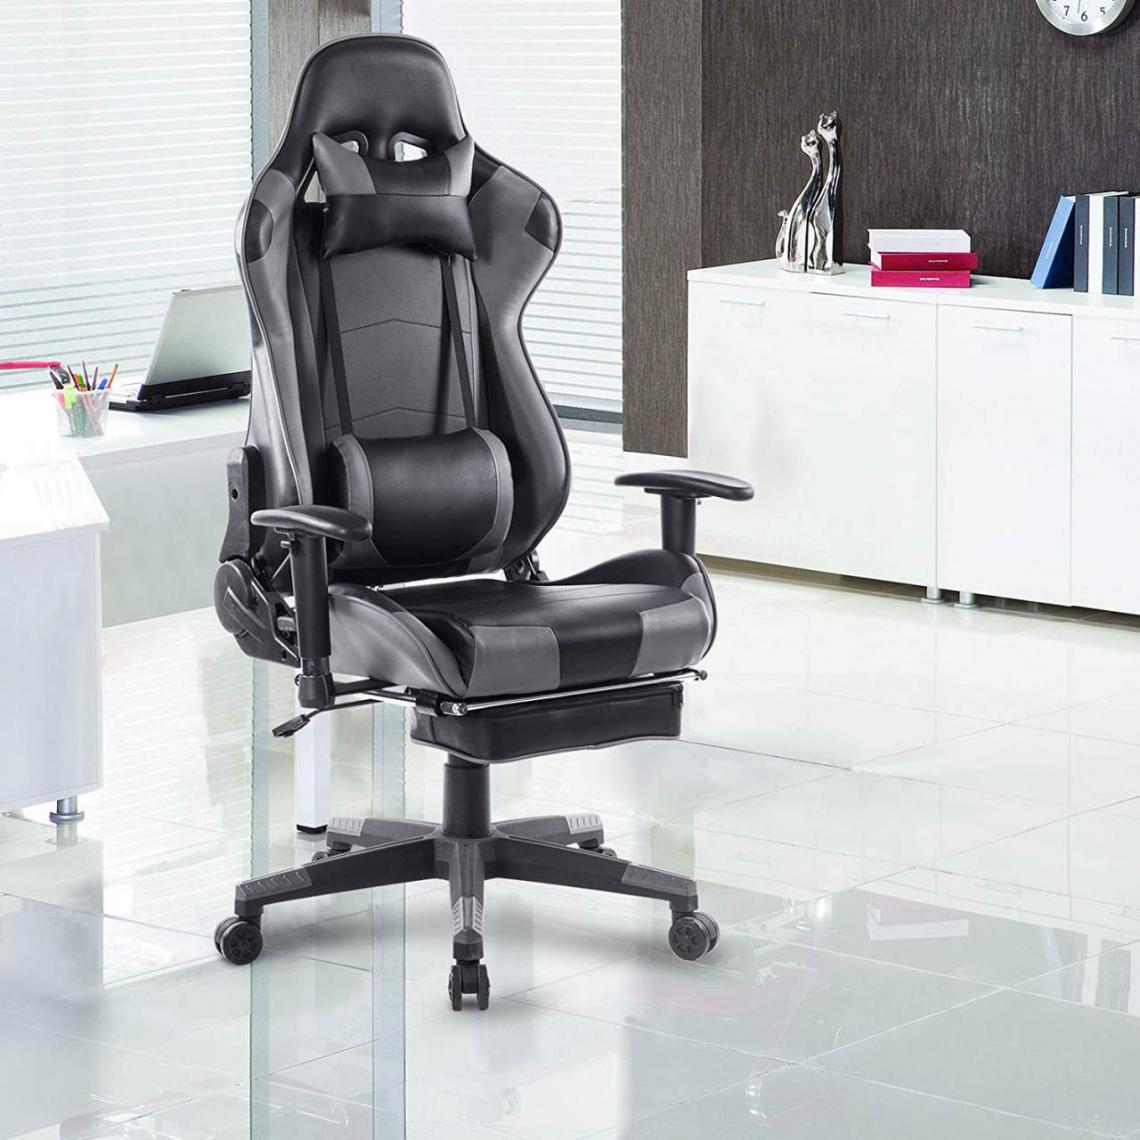 MercatoXL - Gaming président Racing chaise pivotante chaise gris imitation modèle en cuir - Tables à manger